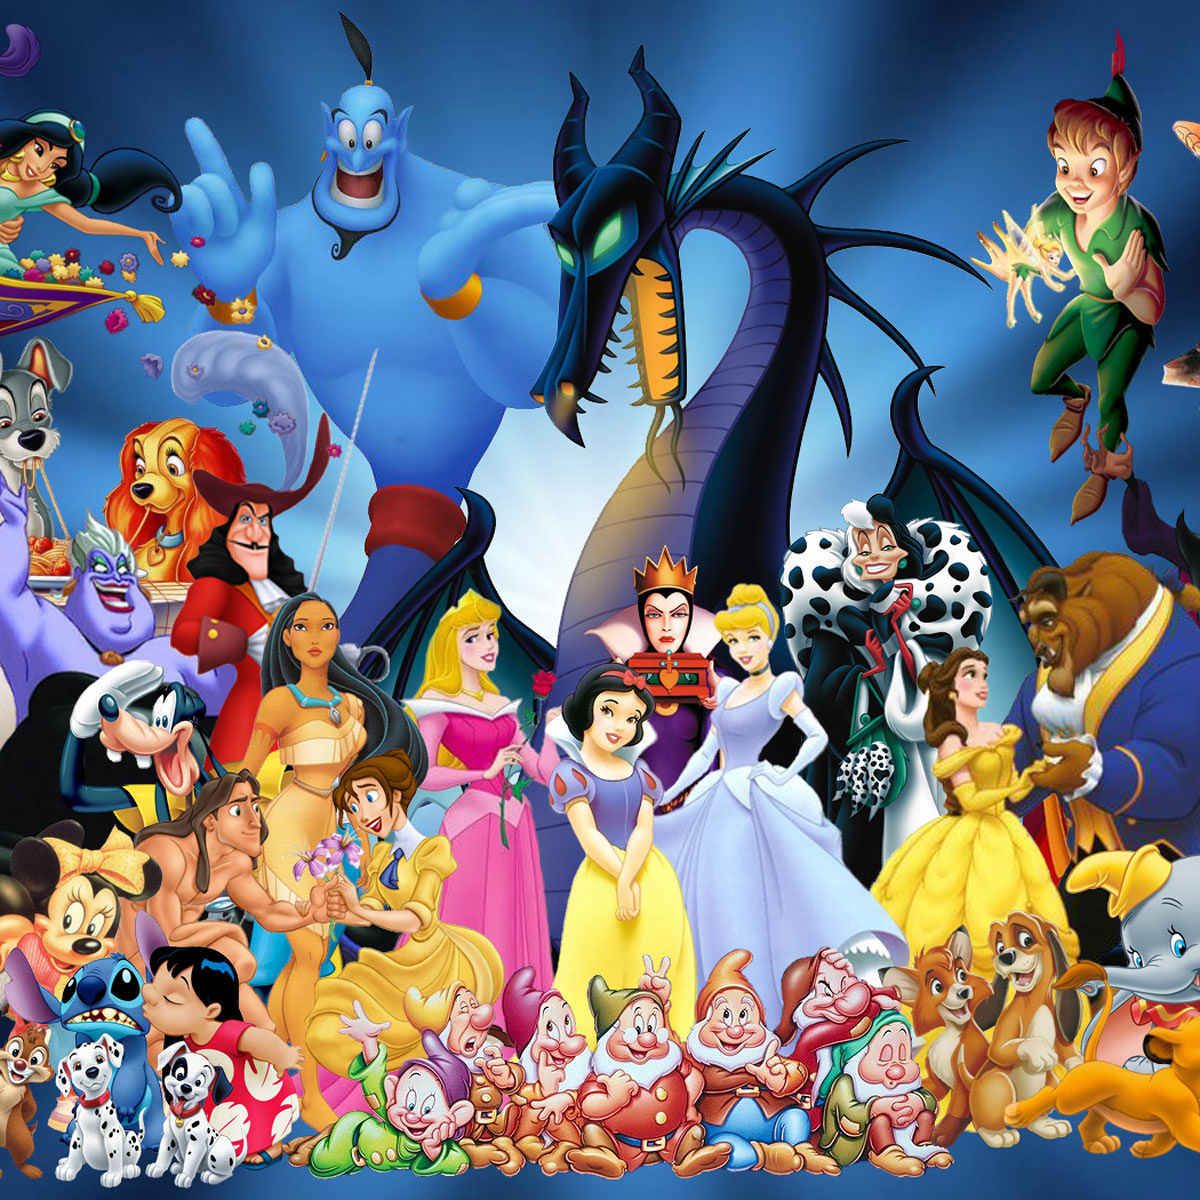 3  7 ans : Dansons avec les personnages Disney  - 5 jours